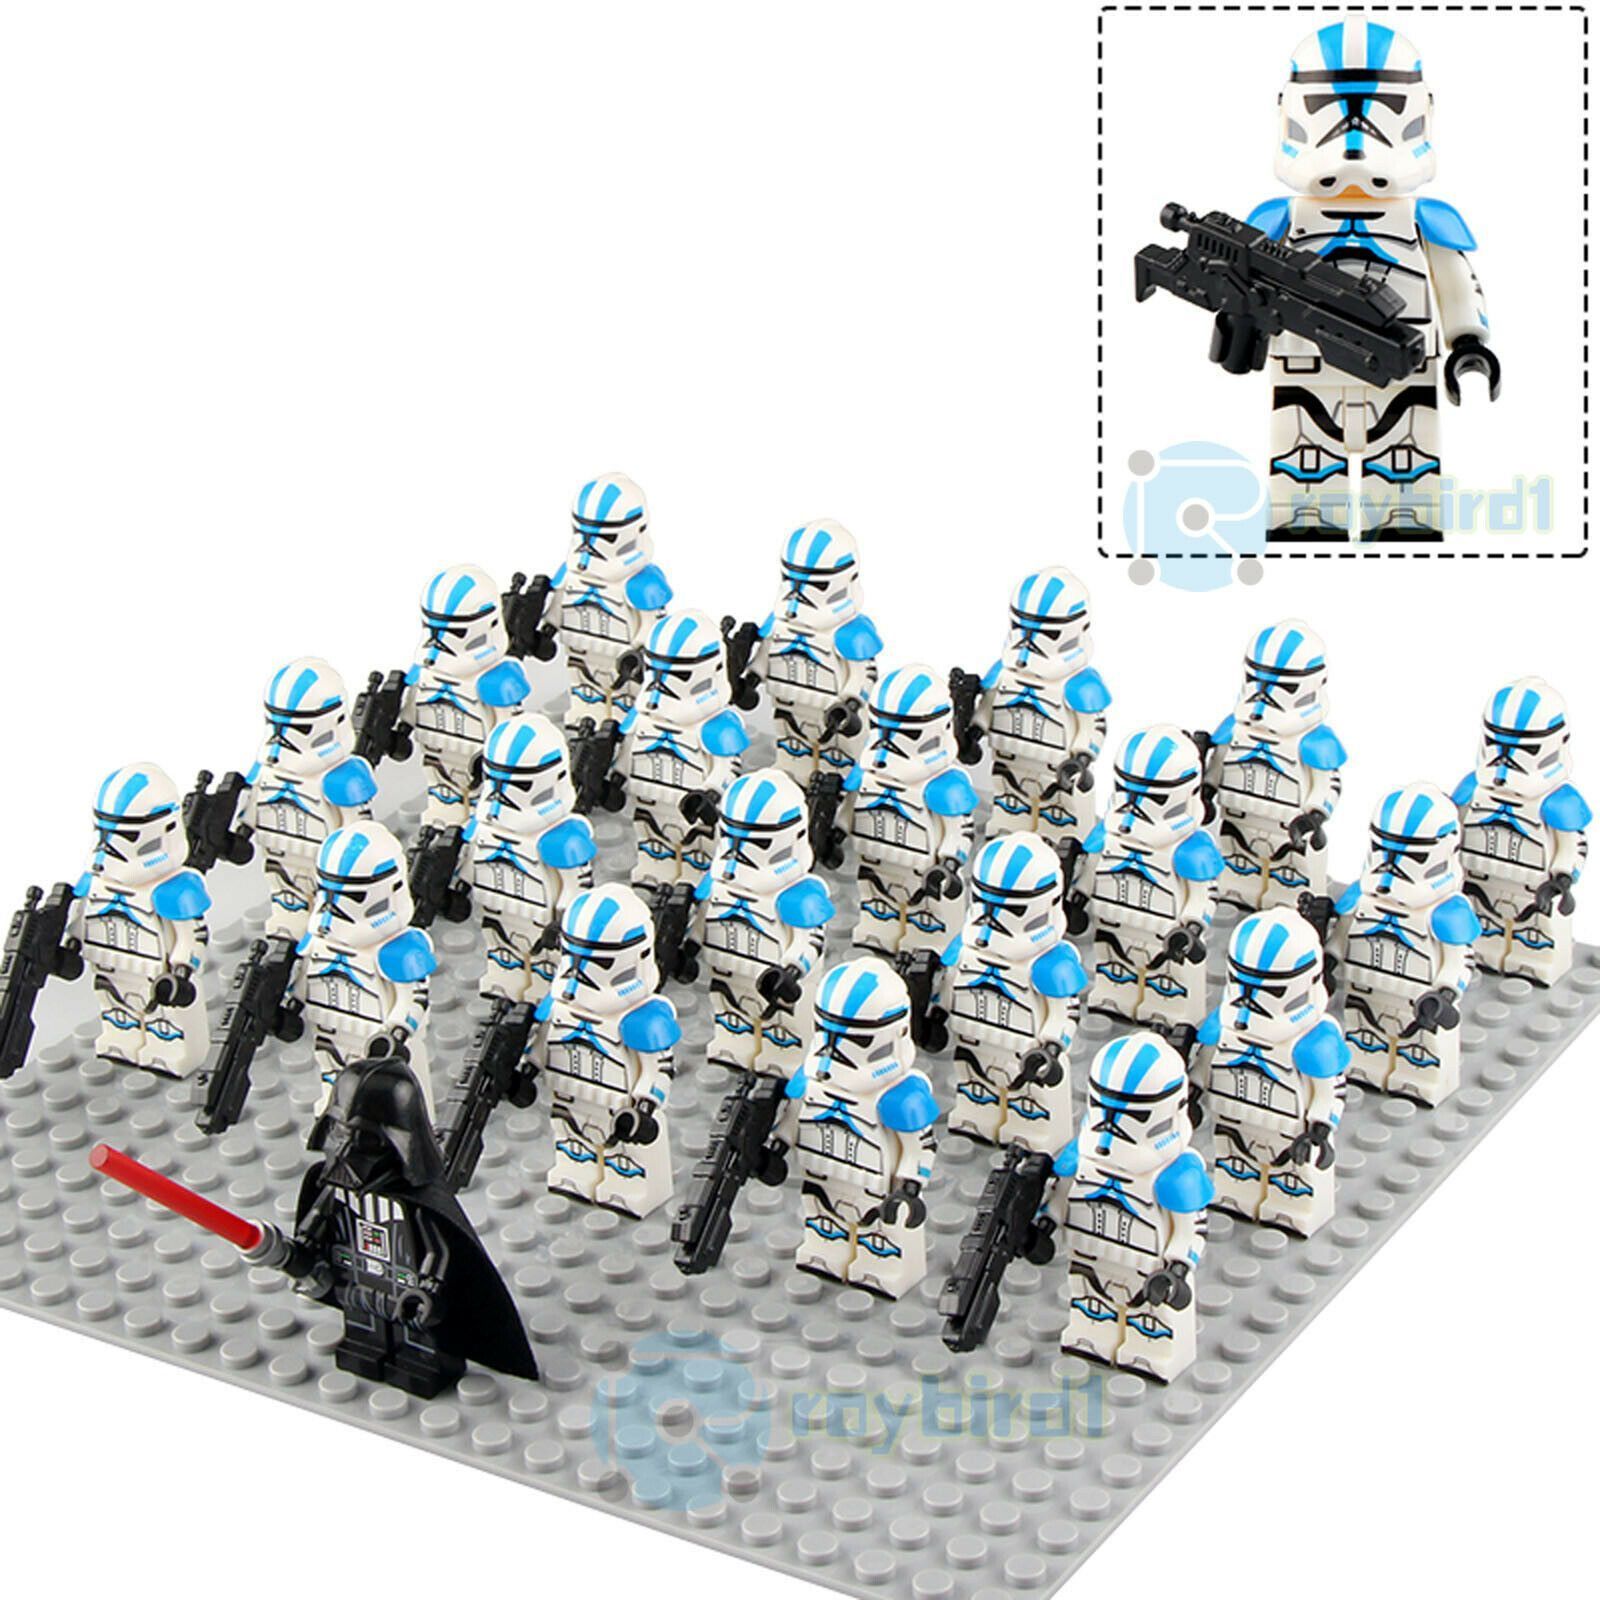 21Pcs Star Wars Custom 501st Legion Clone Trooper Rex Minifigure Block Fit Lego 